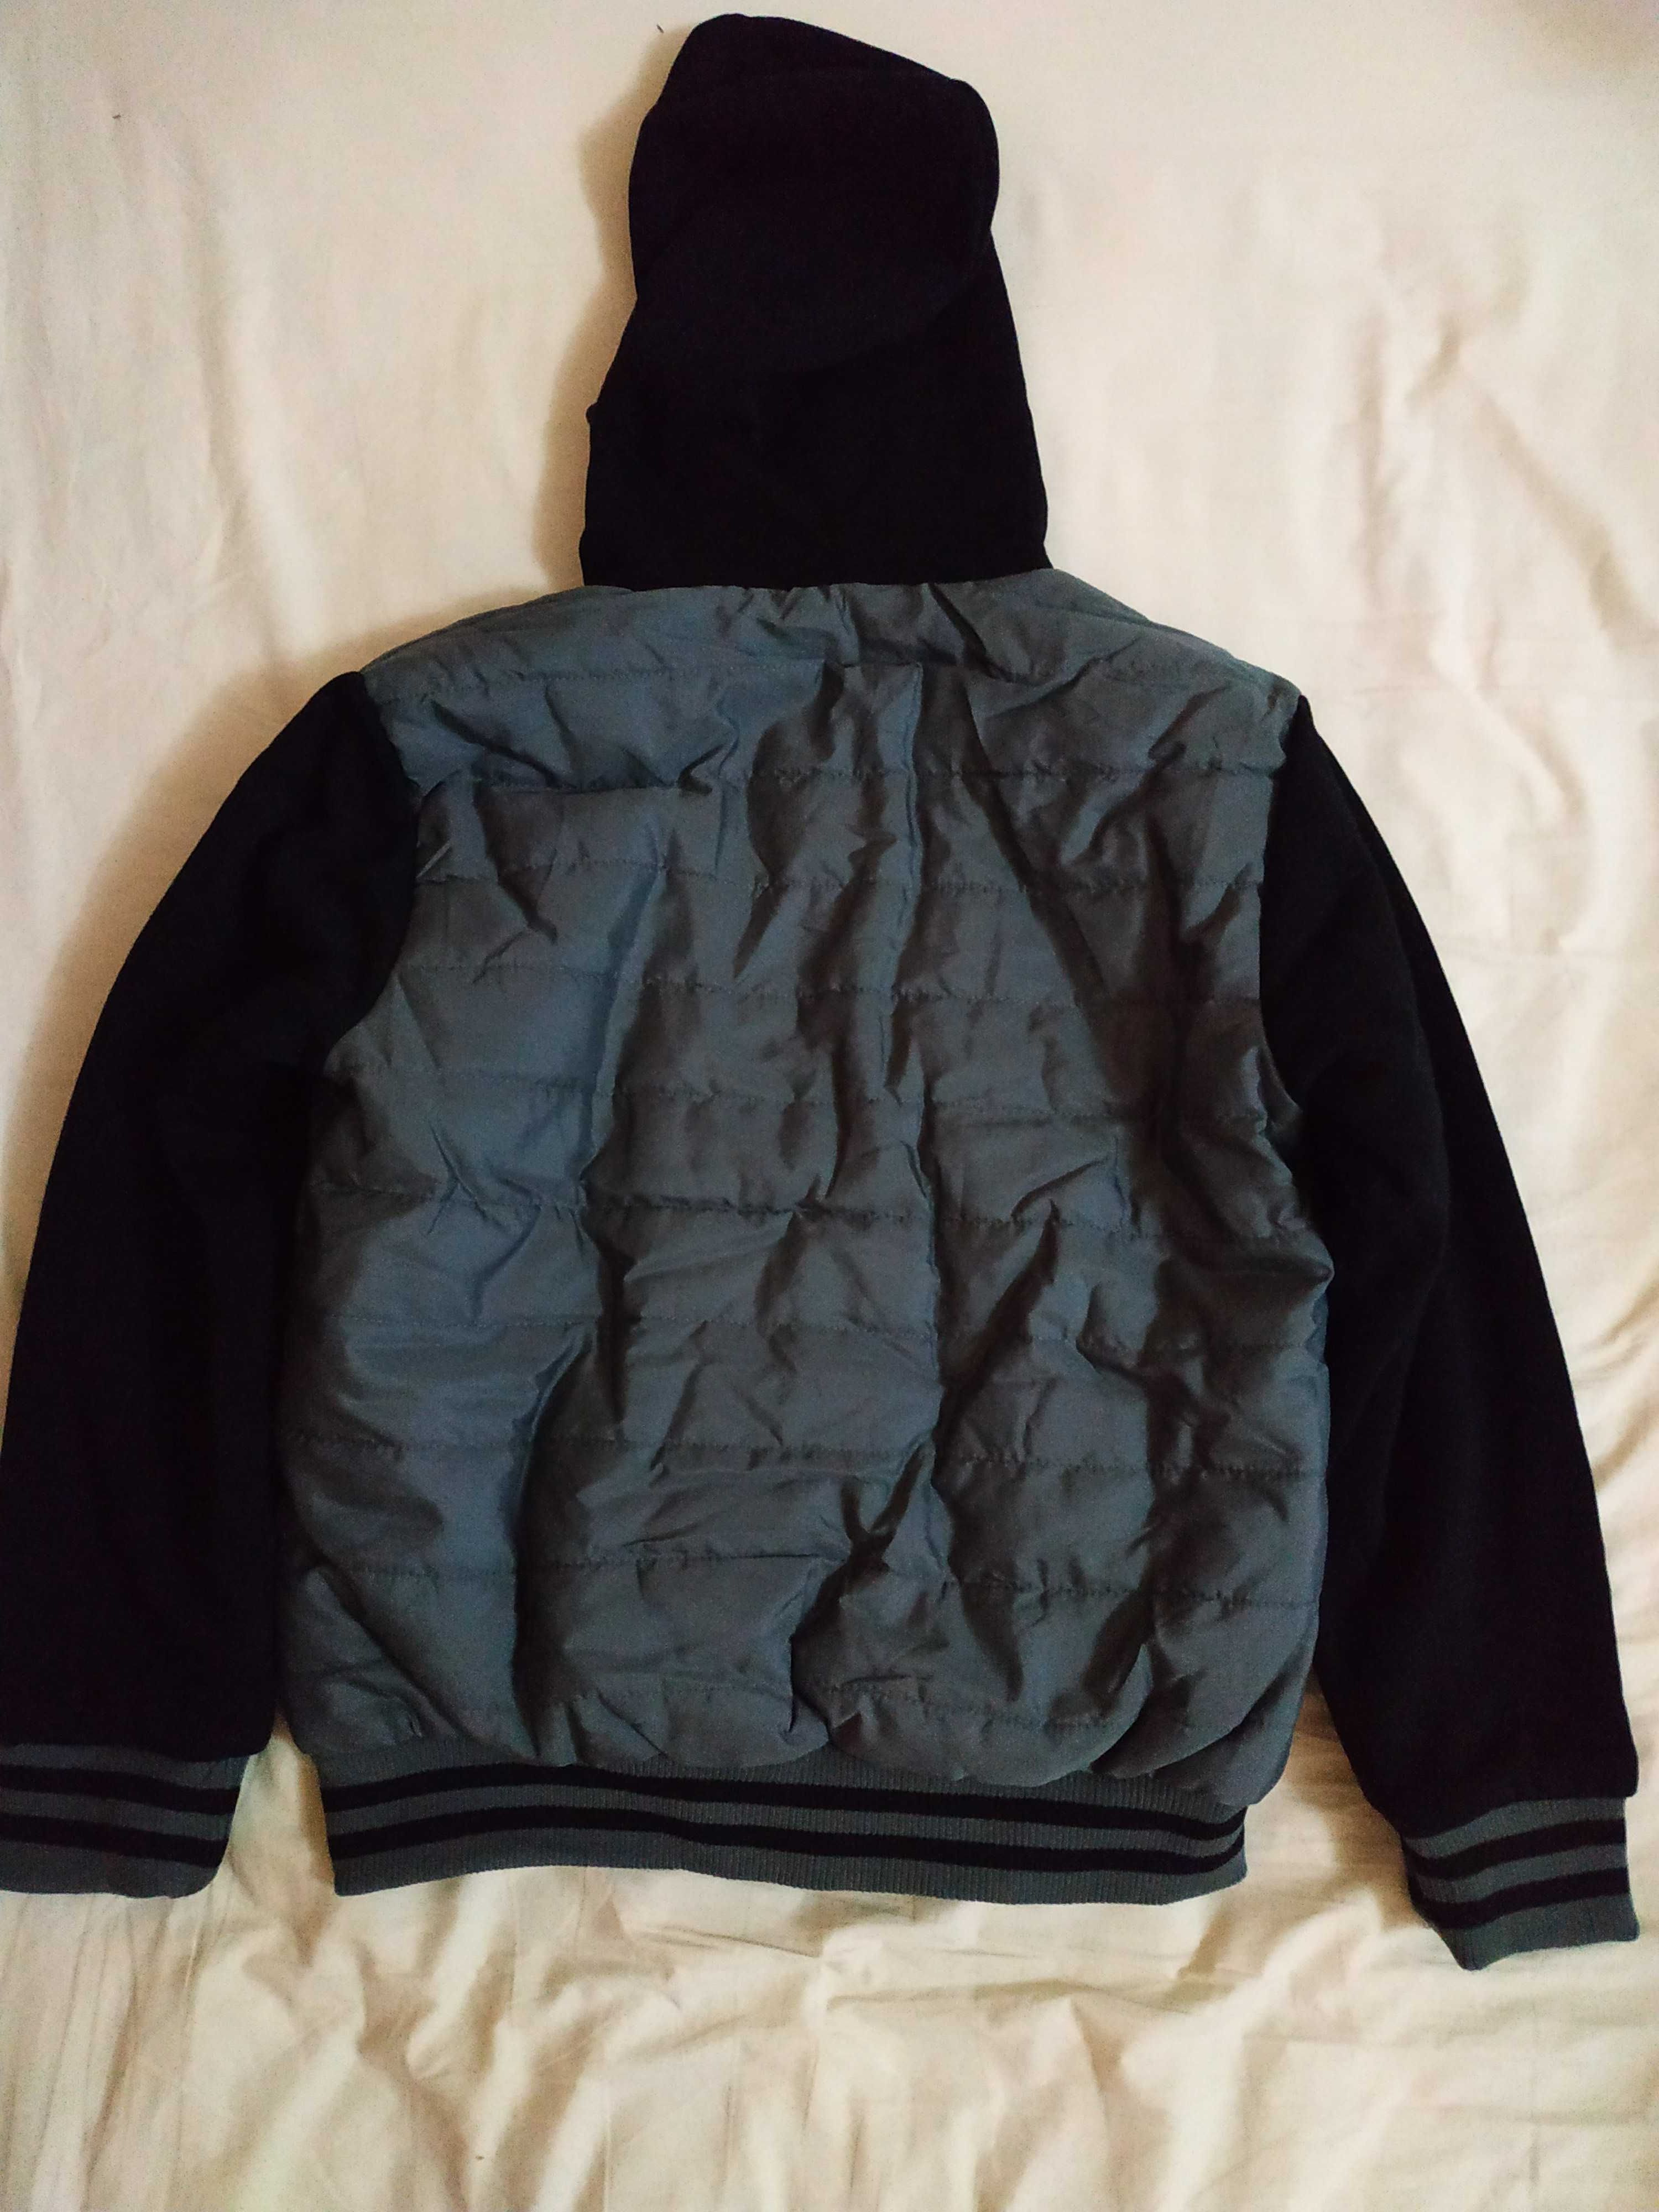 Куртка-ветровка-бомбер. худи.утепленная мехом на 10-12 лет